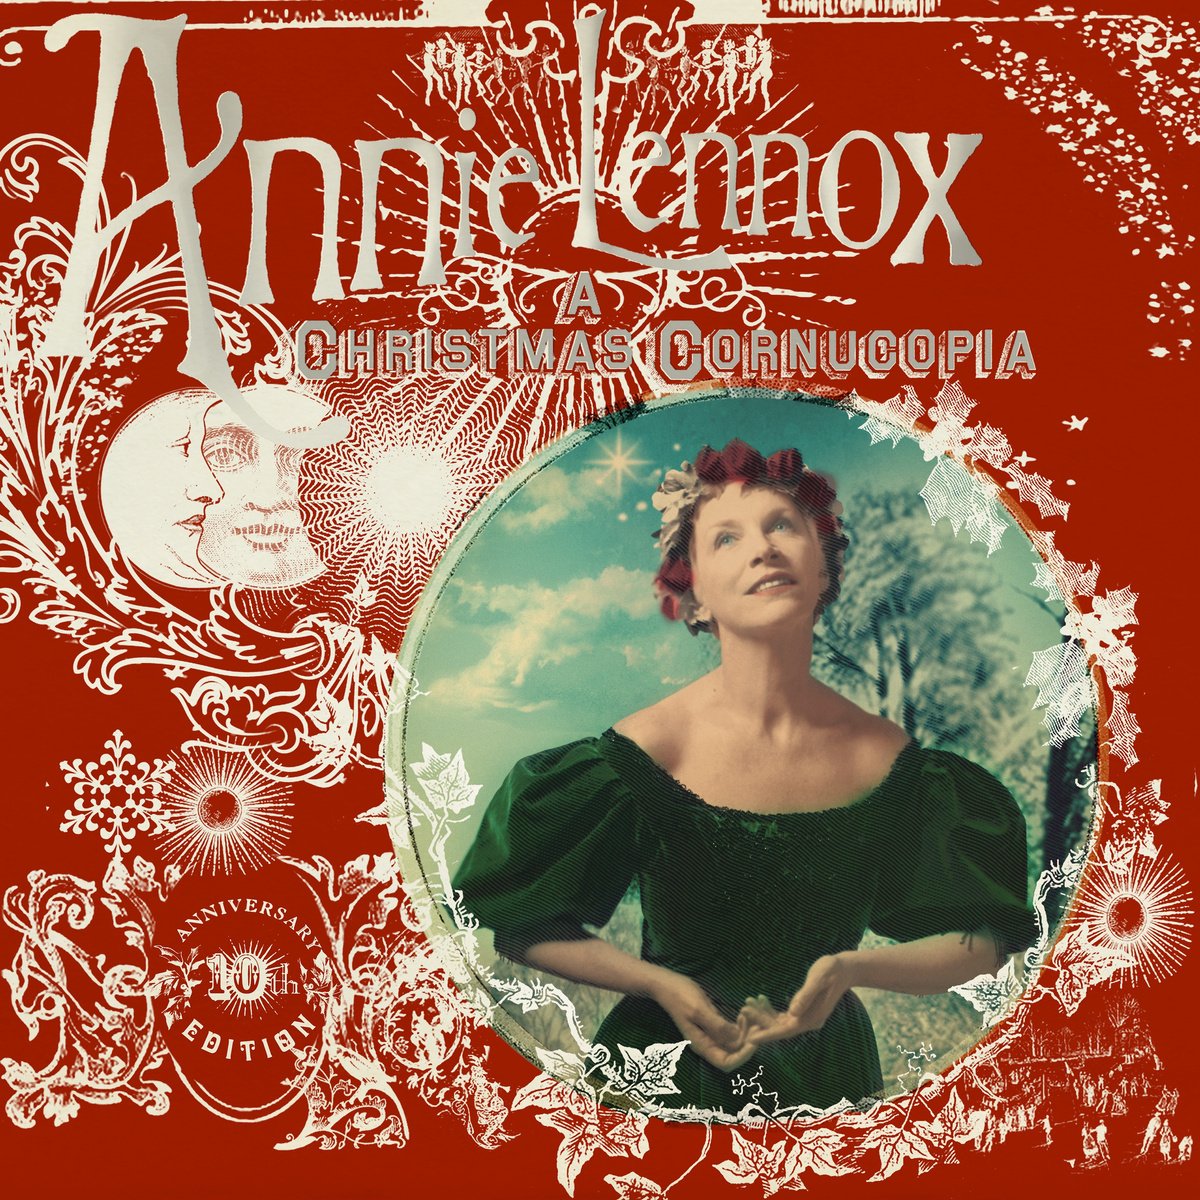 Annie Lennox ripubblica il suo disco natalizio A Christmas Cornucopia